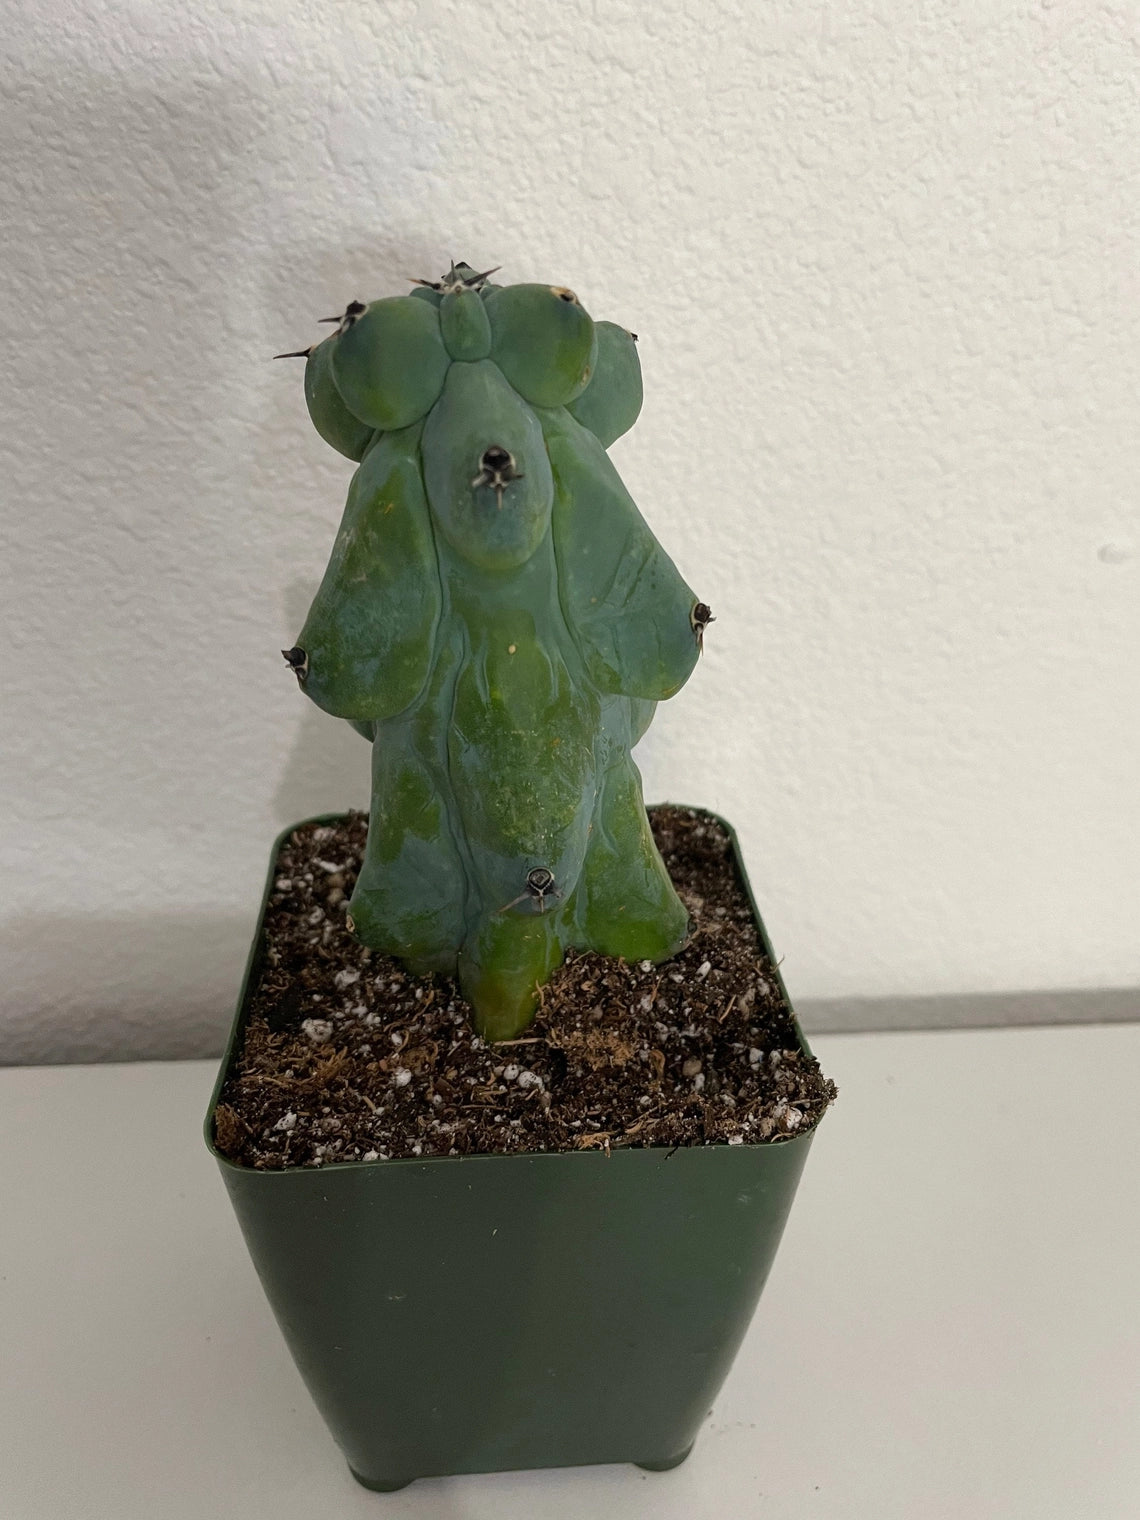 Boob Cactus